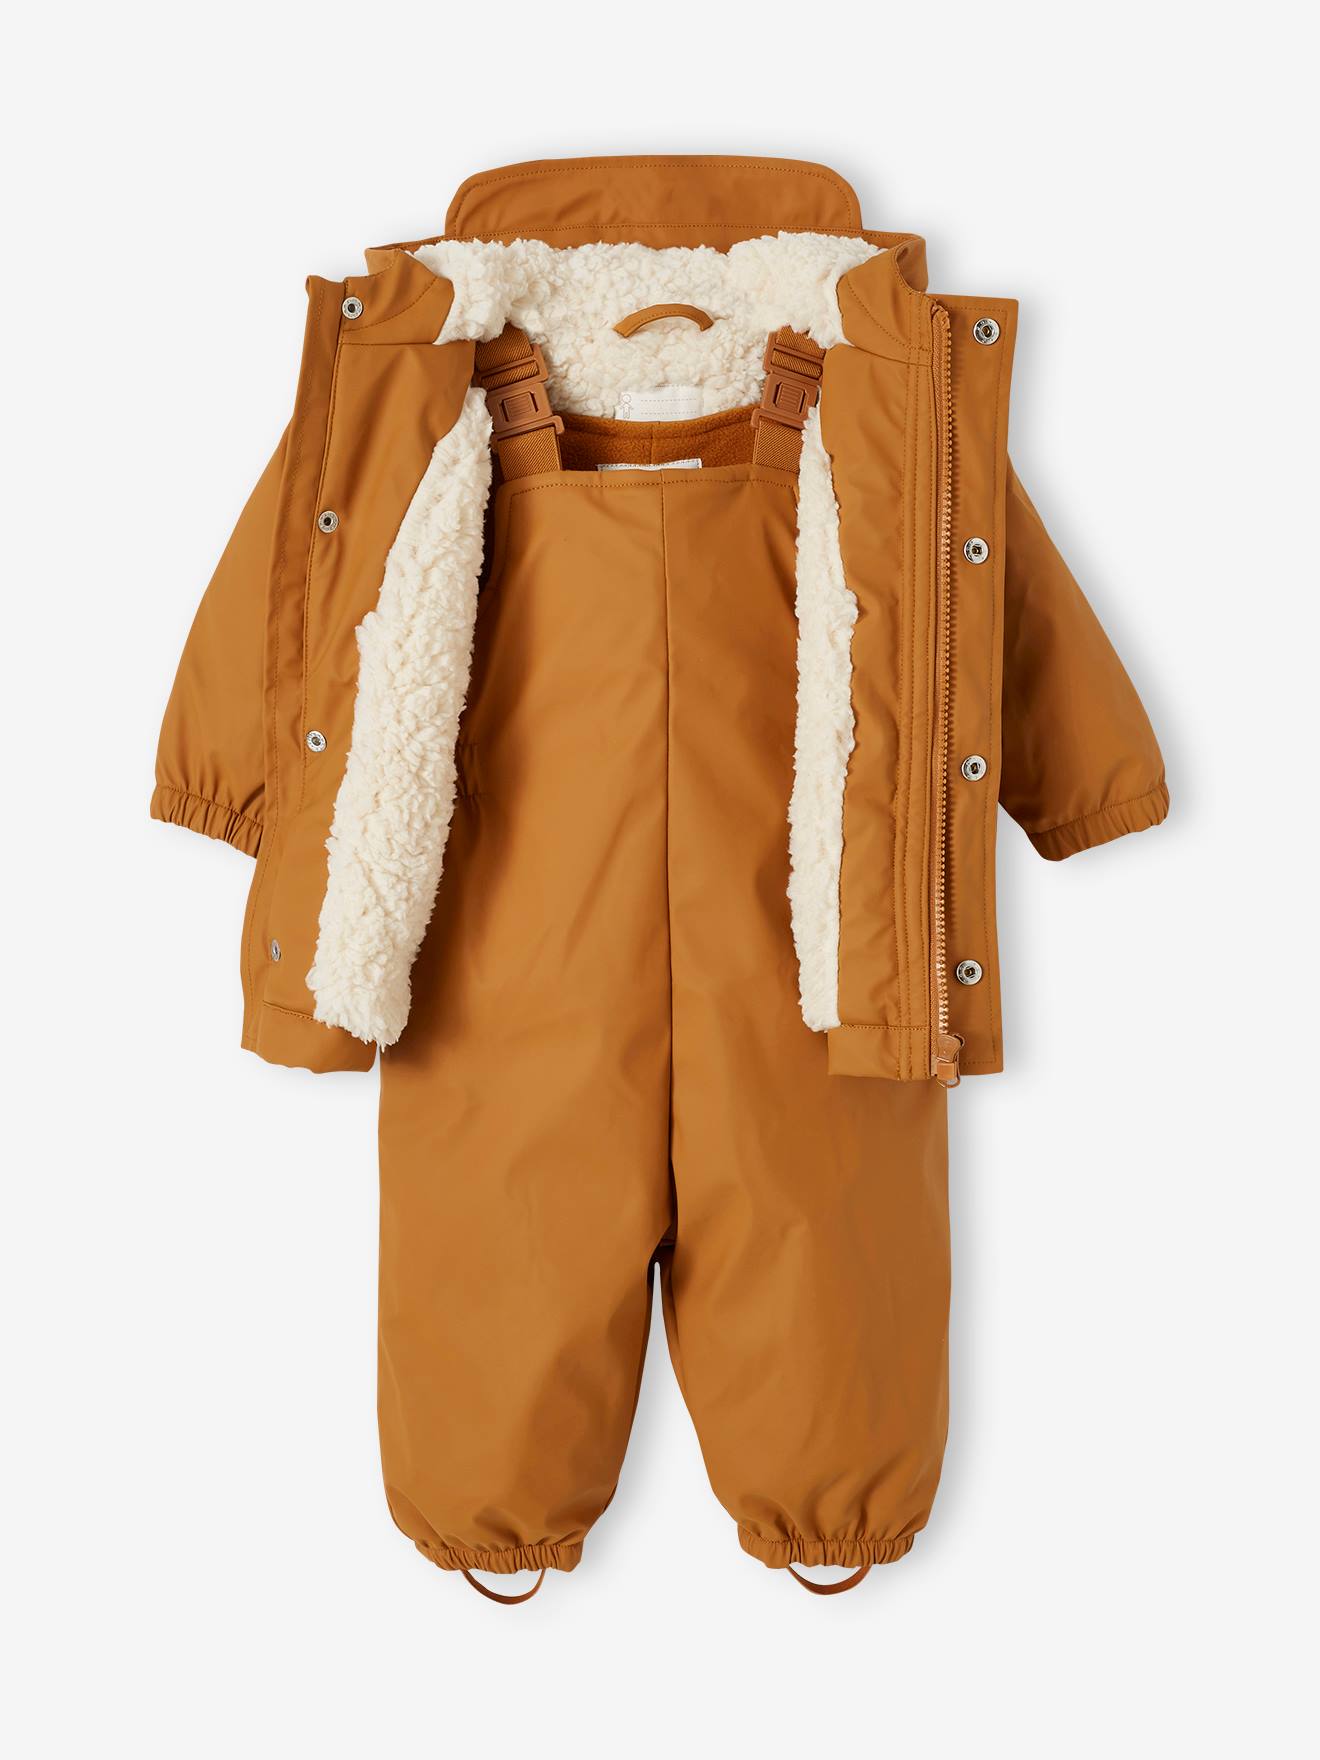 Manteau et pantalon de pluie bébé caramel - Vertbaudet